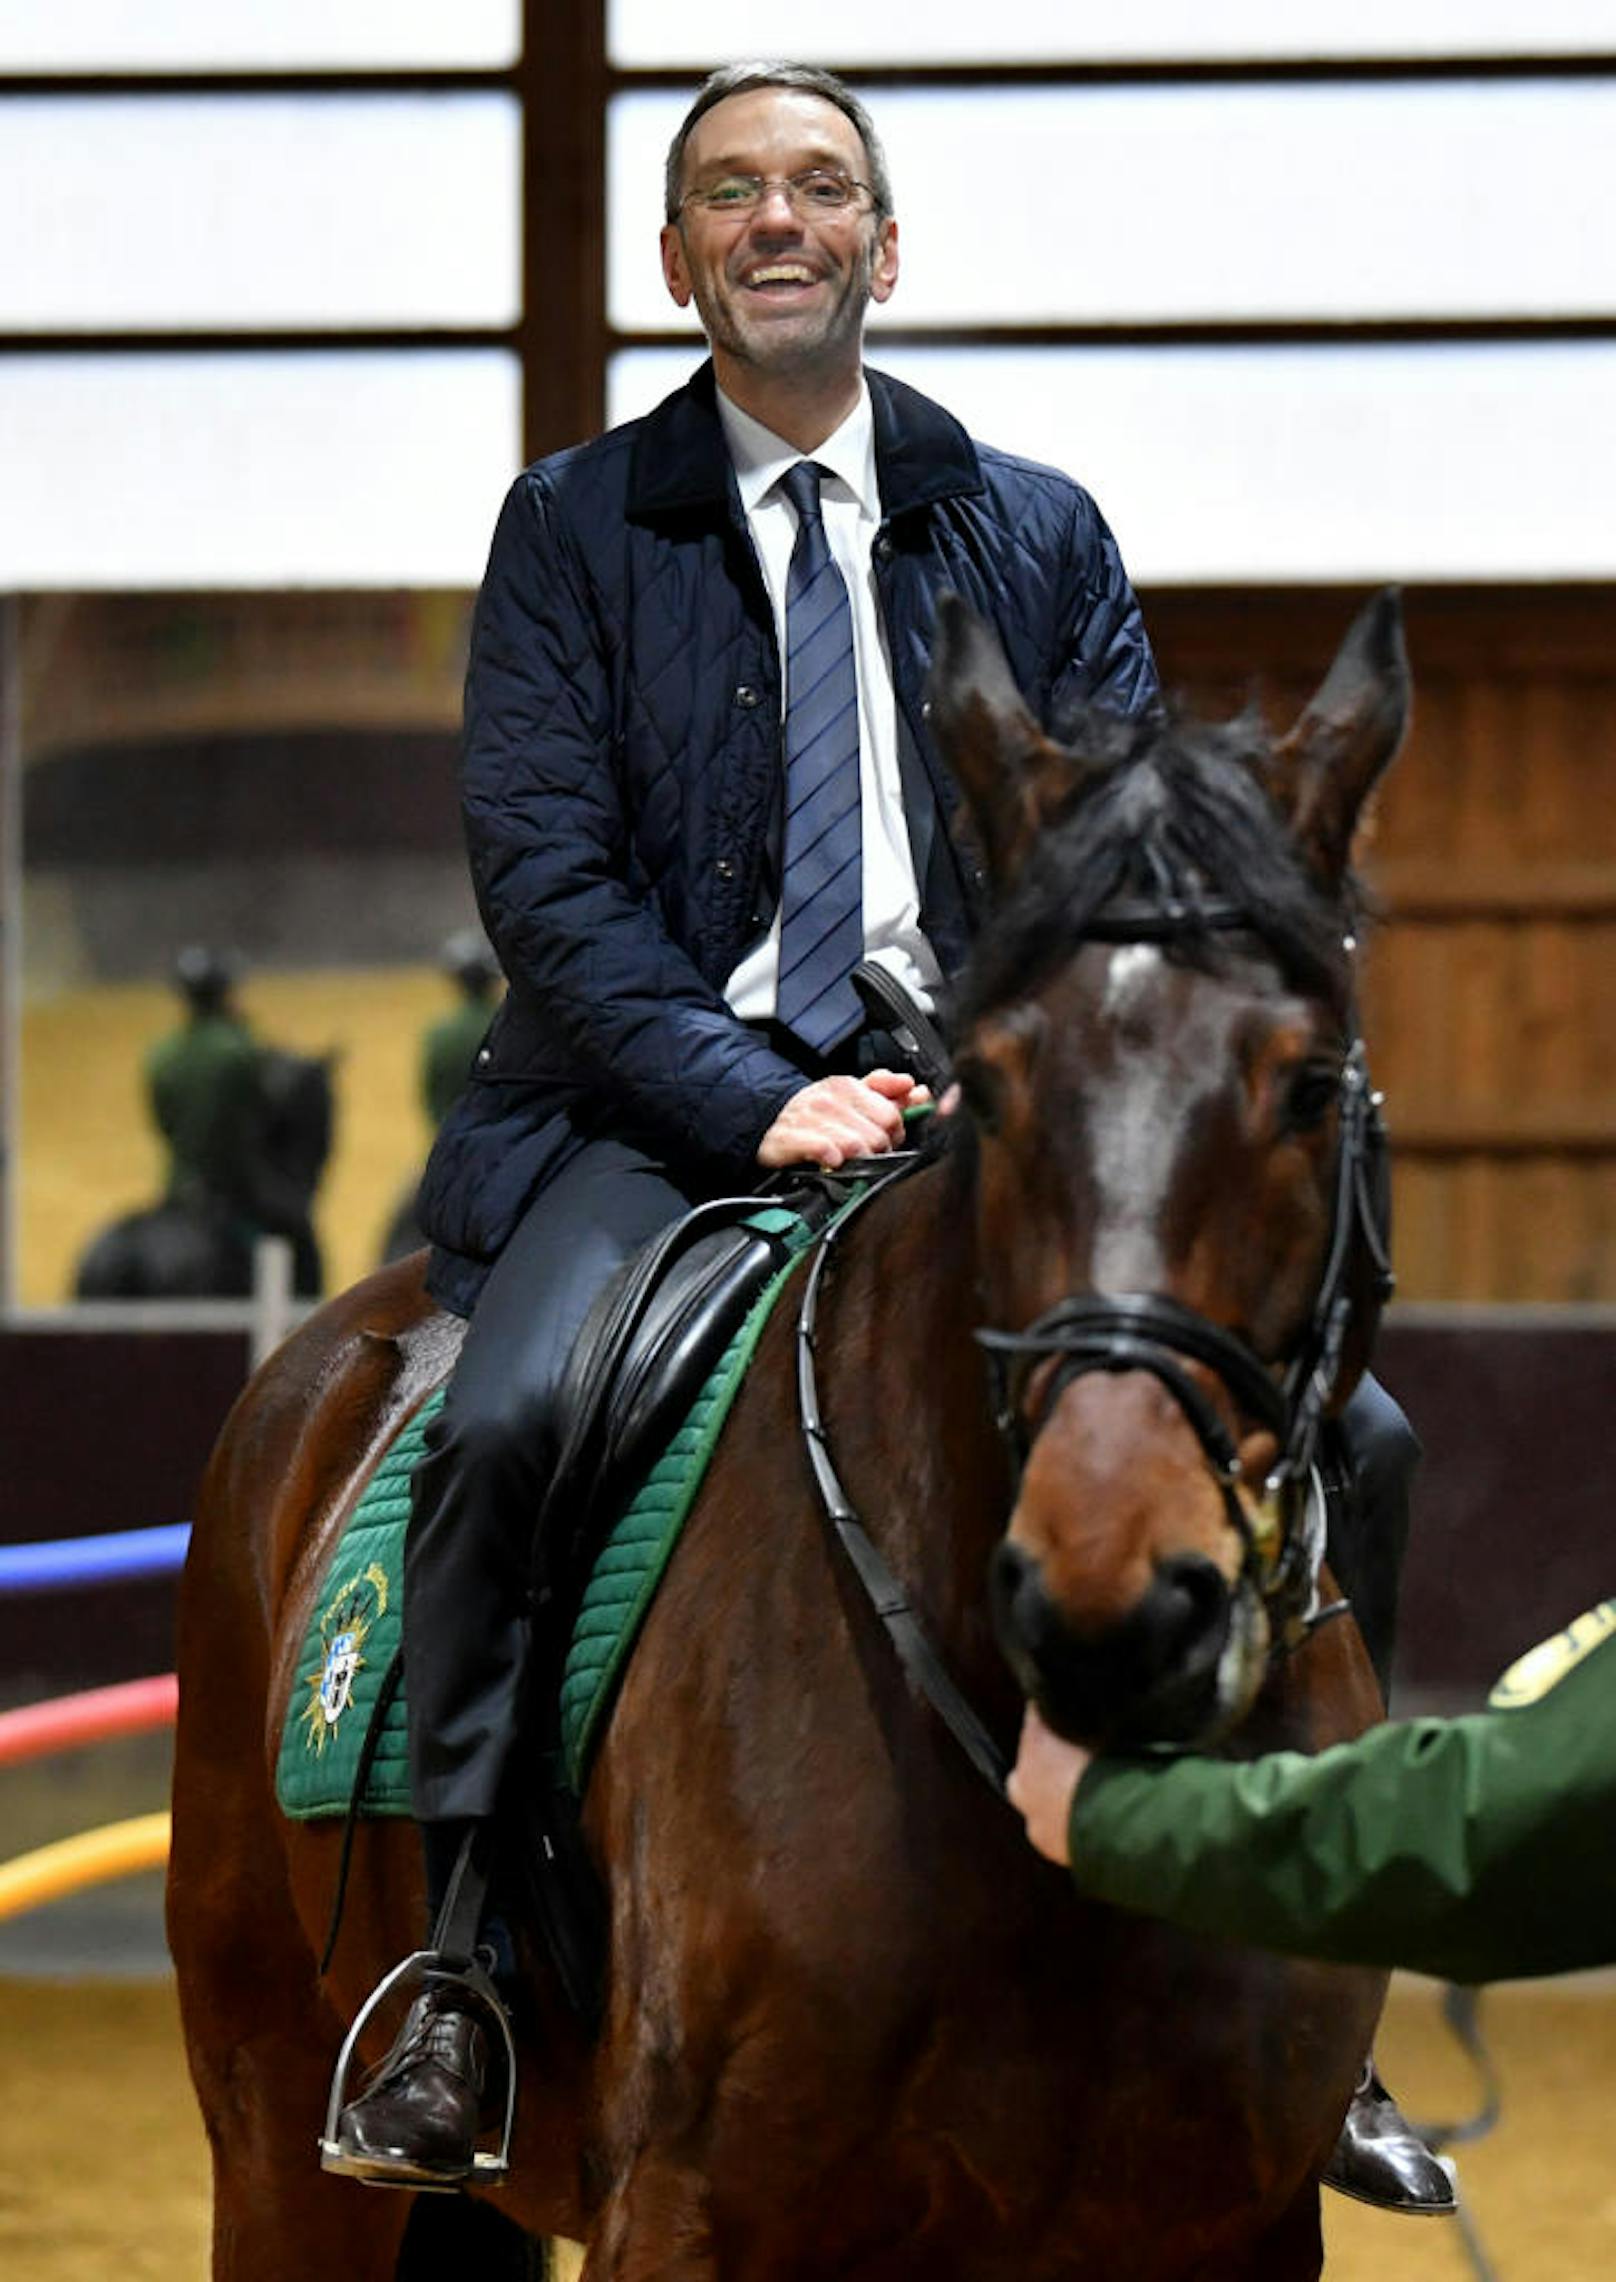 Innenminister Herbert Kickl (FPÖ) auf dem Pferd "Karlo" der Reiterstaffel der bayerischen Polizei, am Donnerstag, 15. Februar 2018, in München.